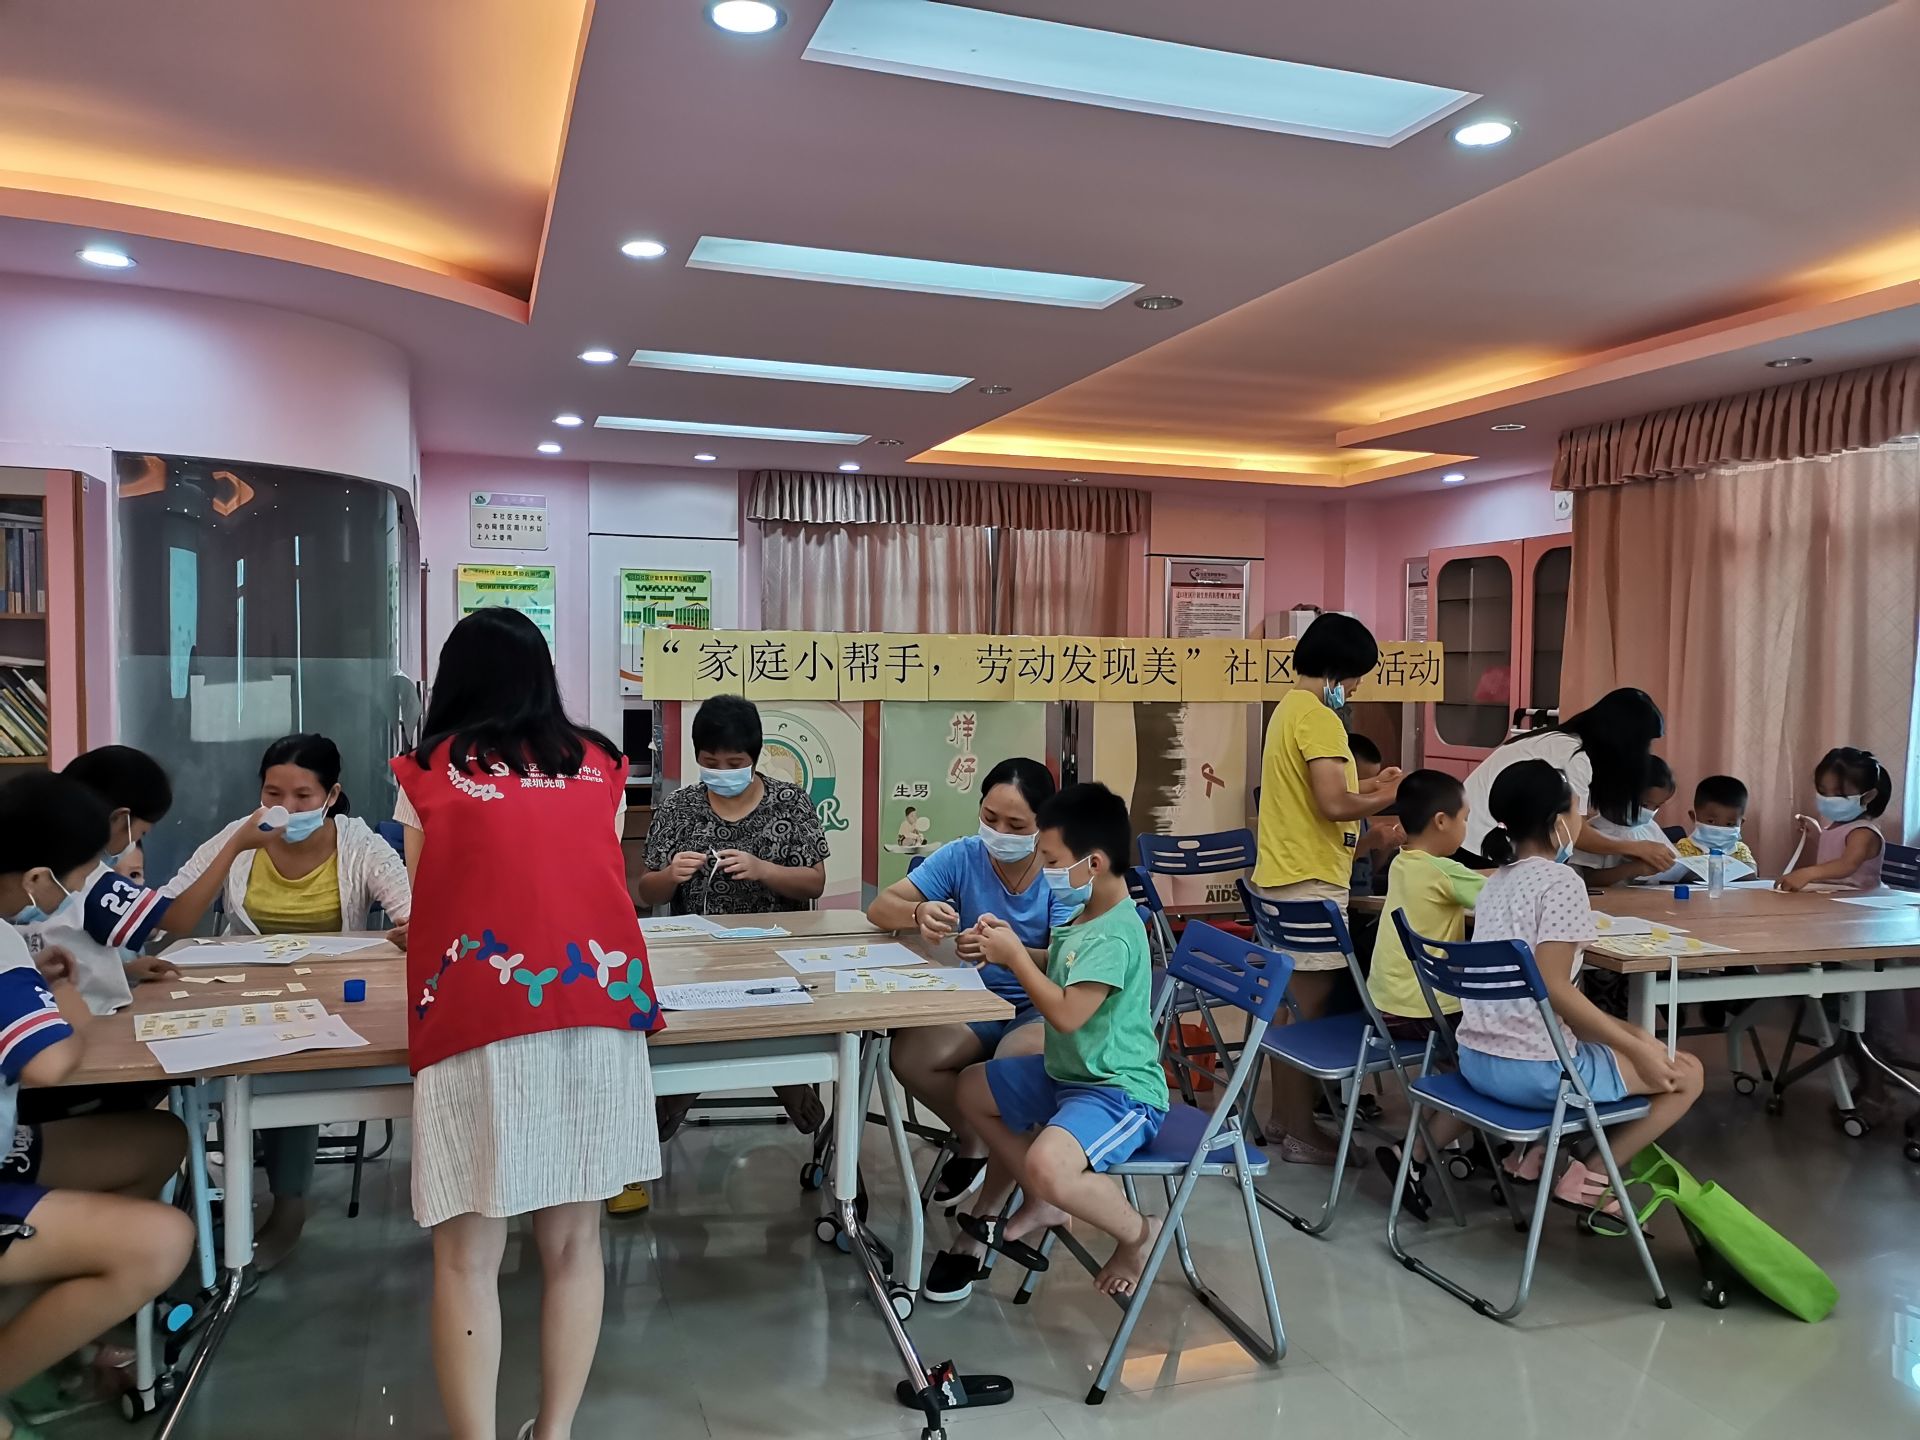 光明迳口社区举办亲子劳动教育活动